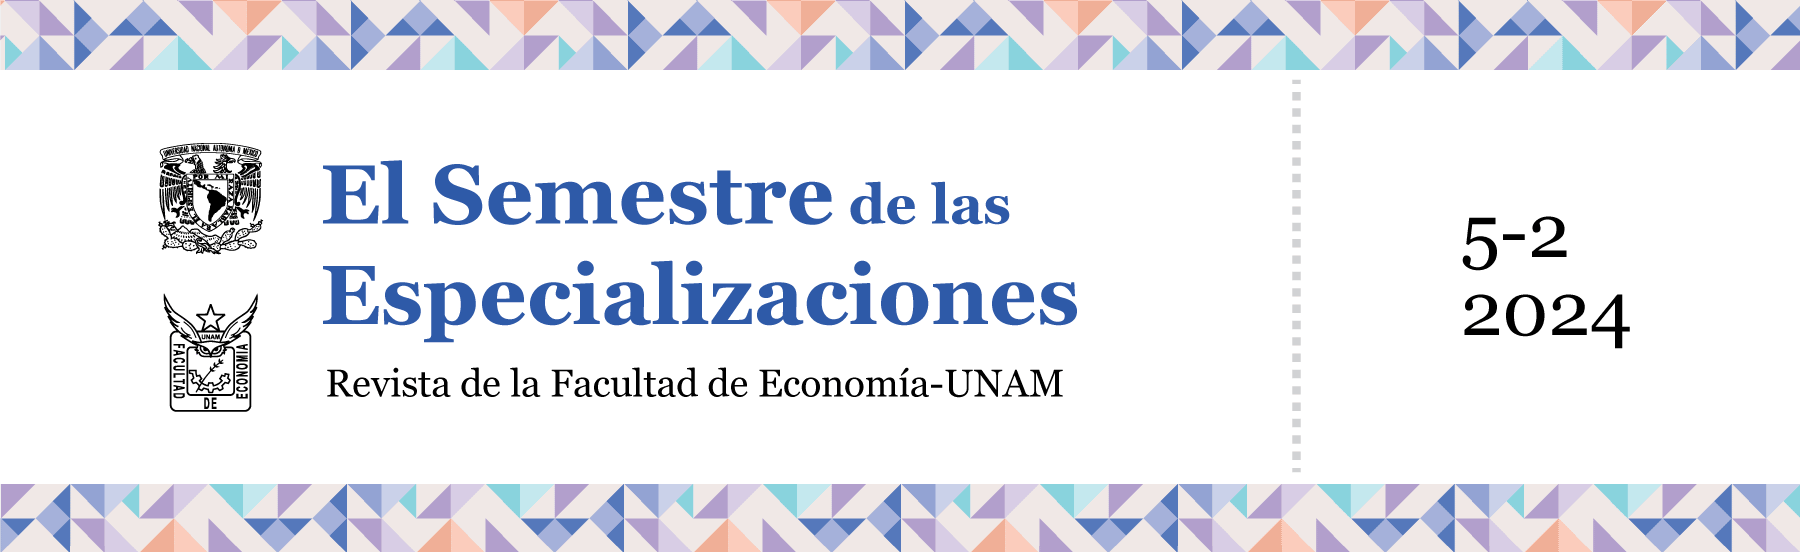 El Semestre de las Especializaciones 5-2 (2024). Revista de la Facultad de Economía-UNAM
